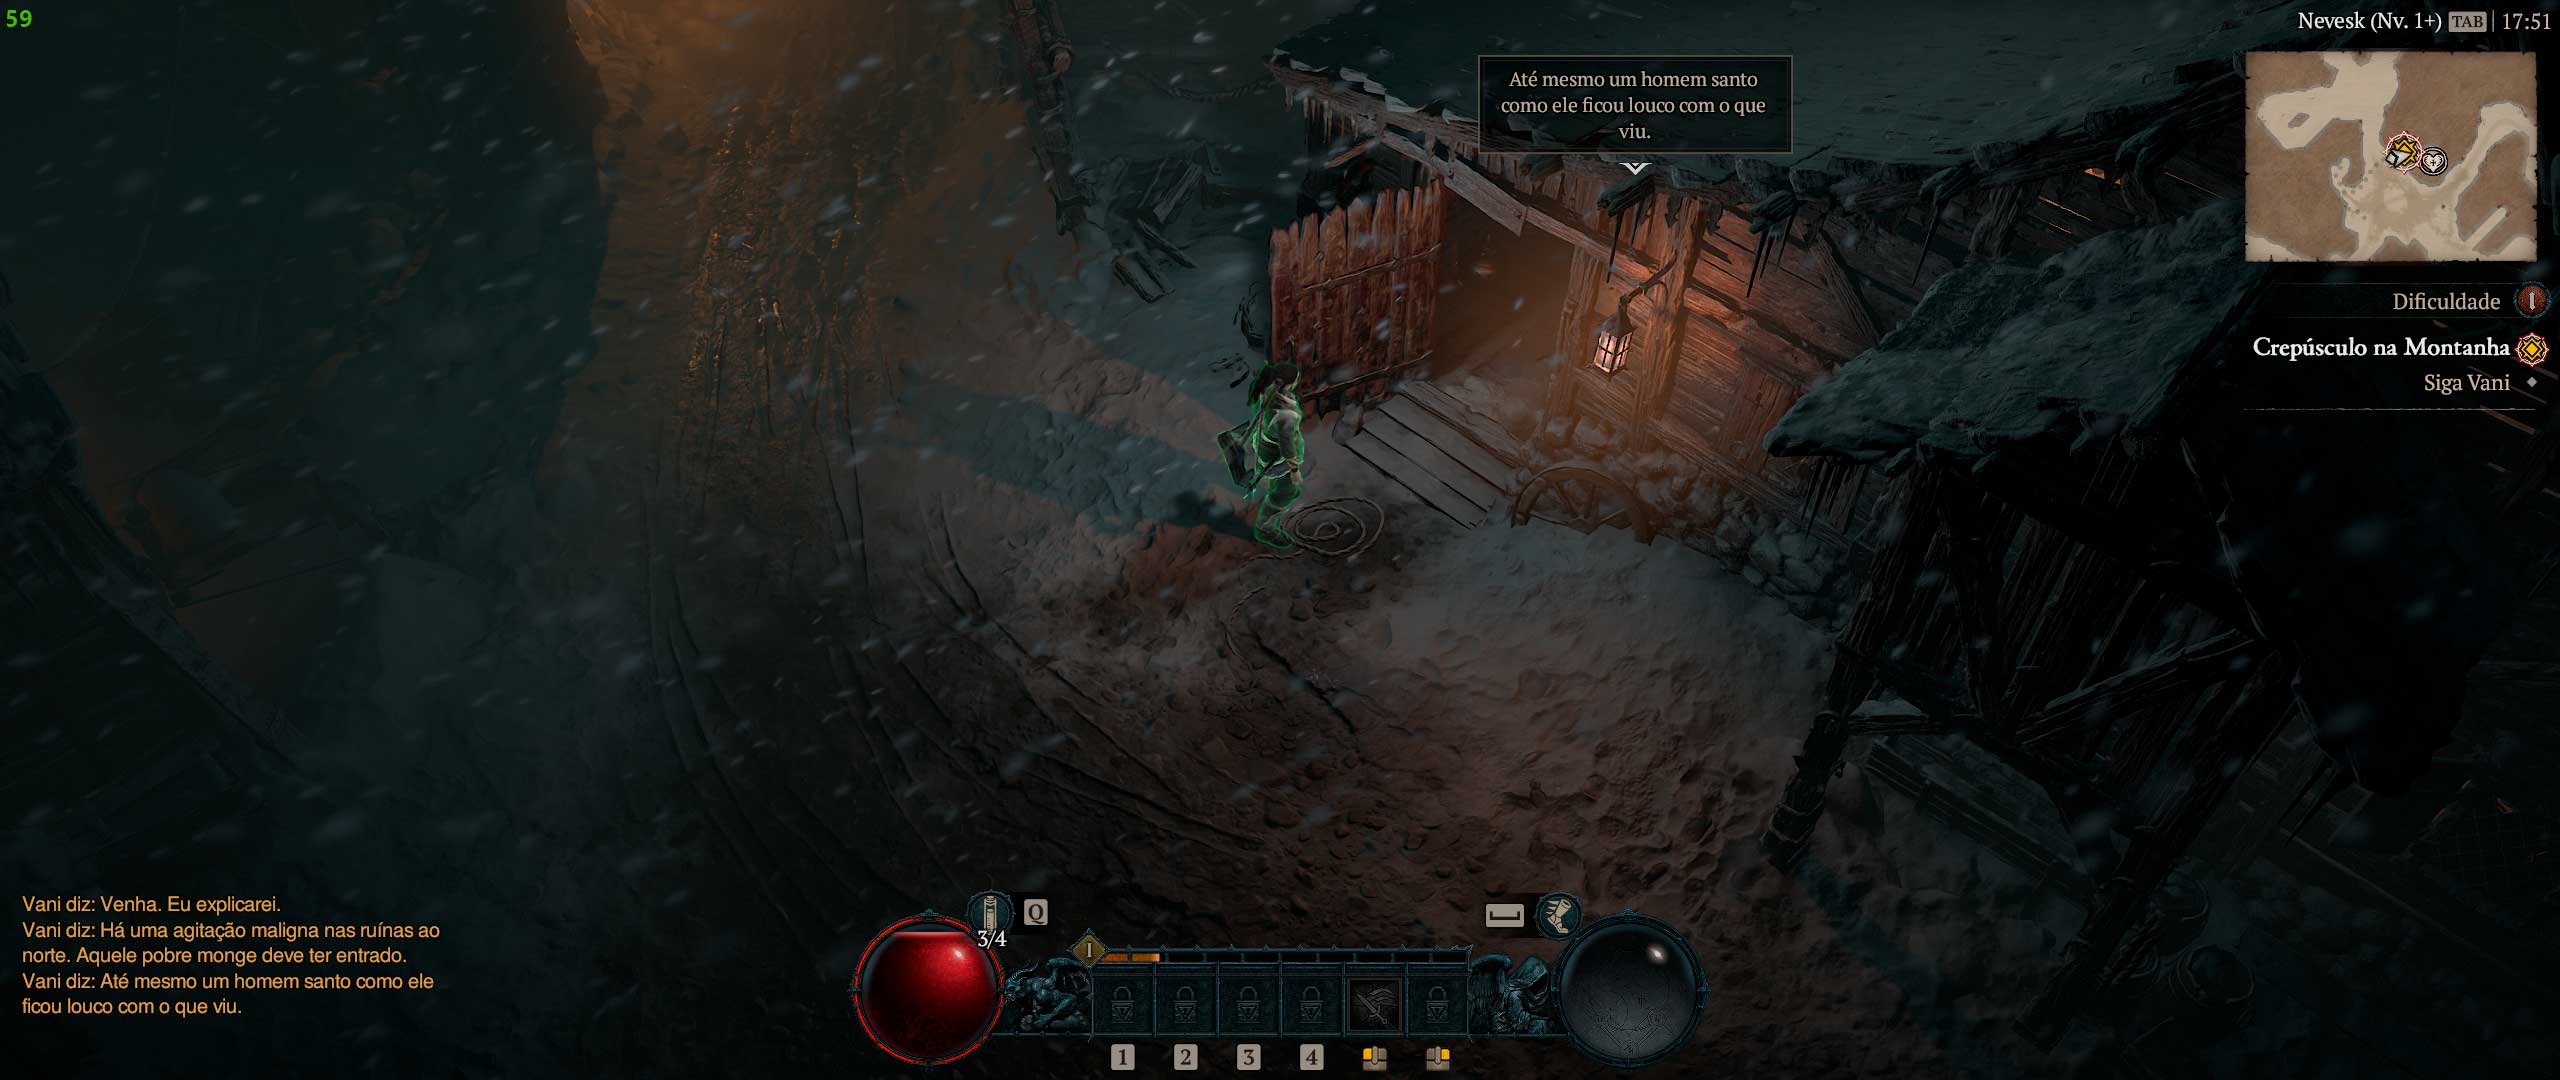 Descrição da Imagem: Cenario interativo dentro do jogo onde toca sons de localização de itens